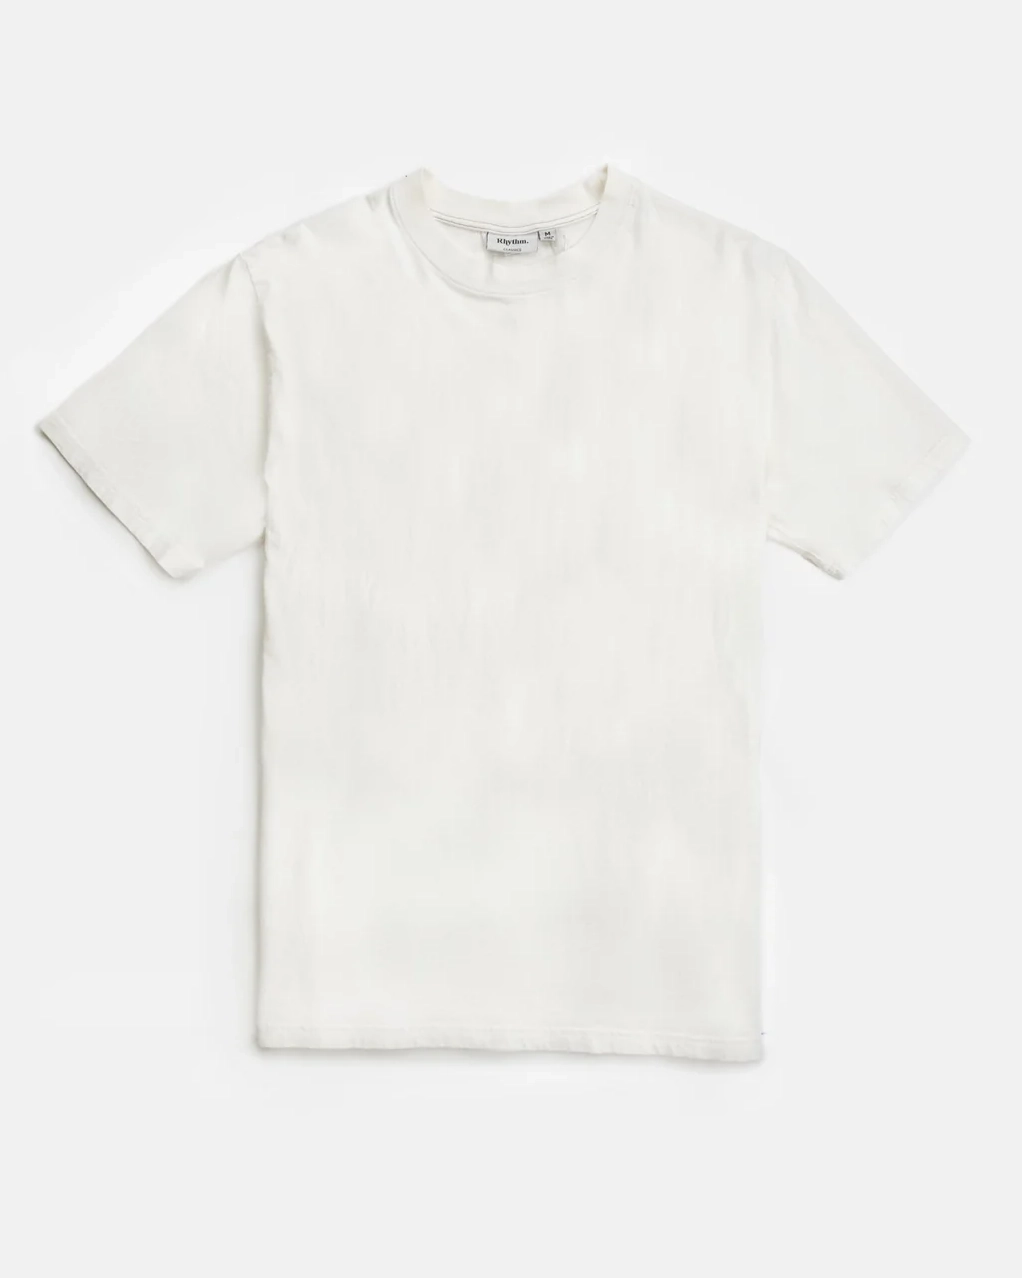 T-shirt Classic Vintage - Vintage White - L